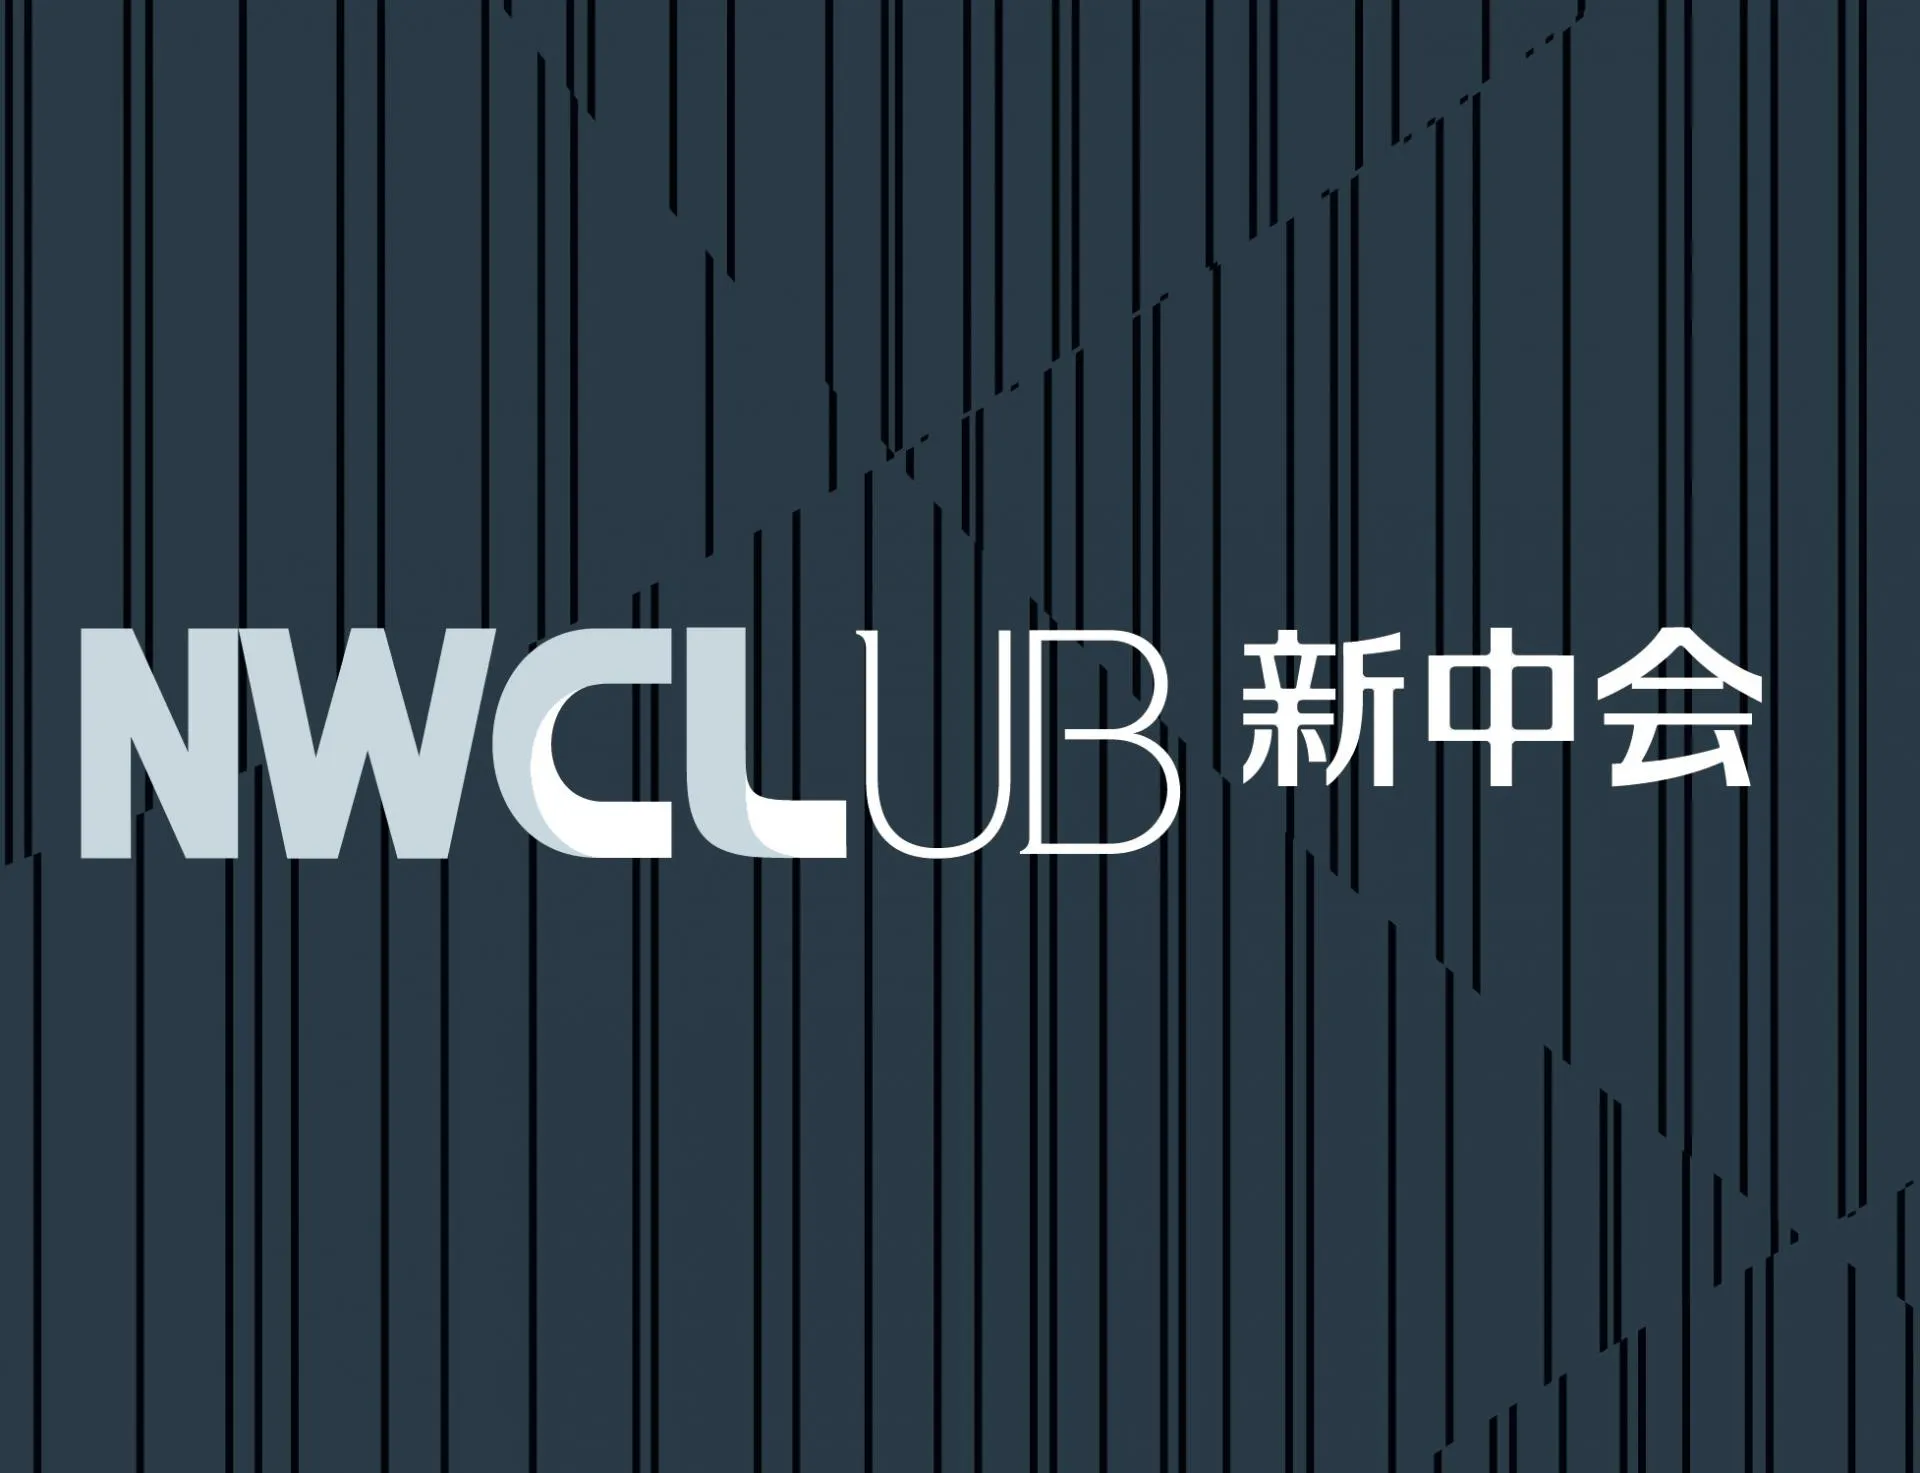 NWCL Club is established.